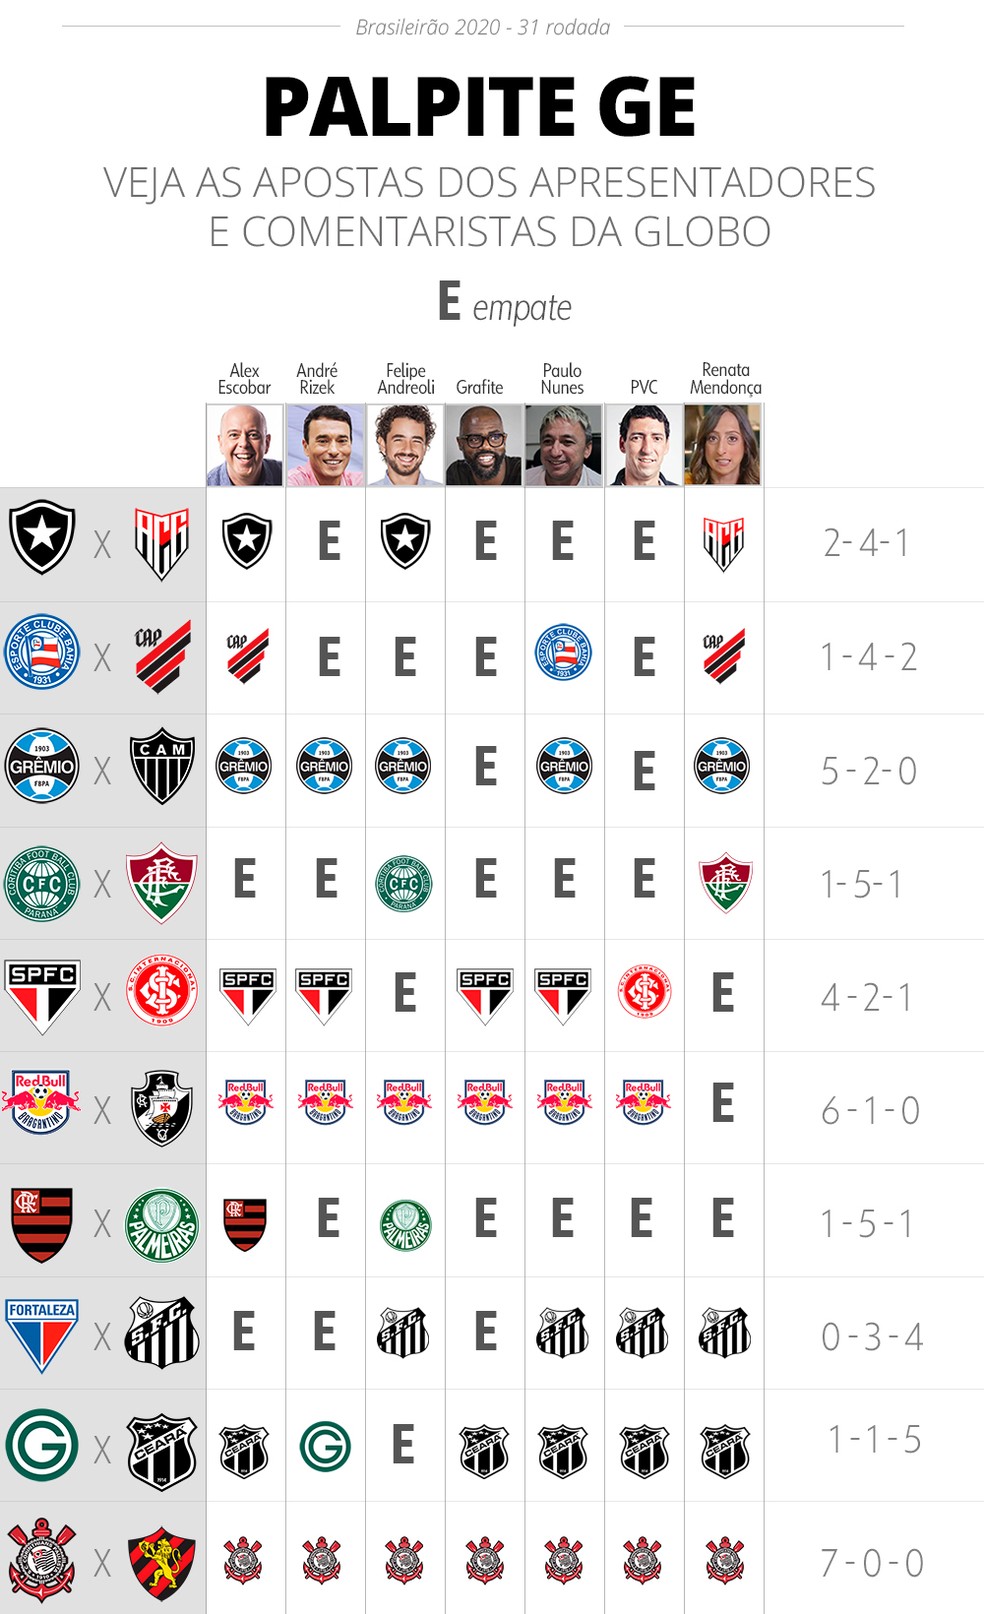 Veja como ficou a Série A após os jogos da 31ª rodada